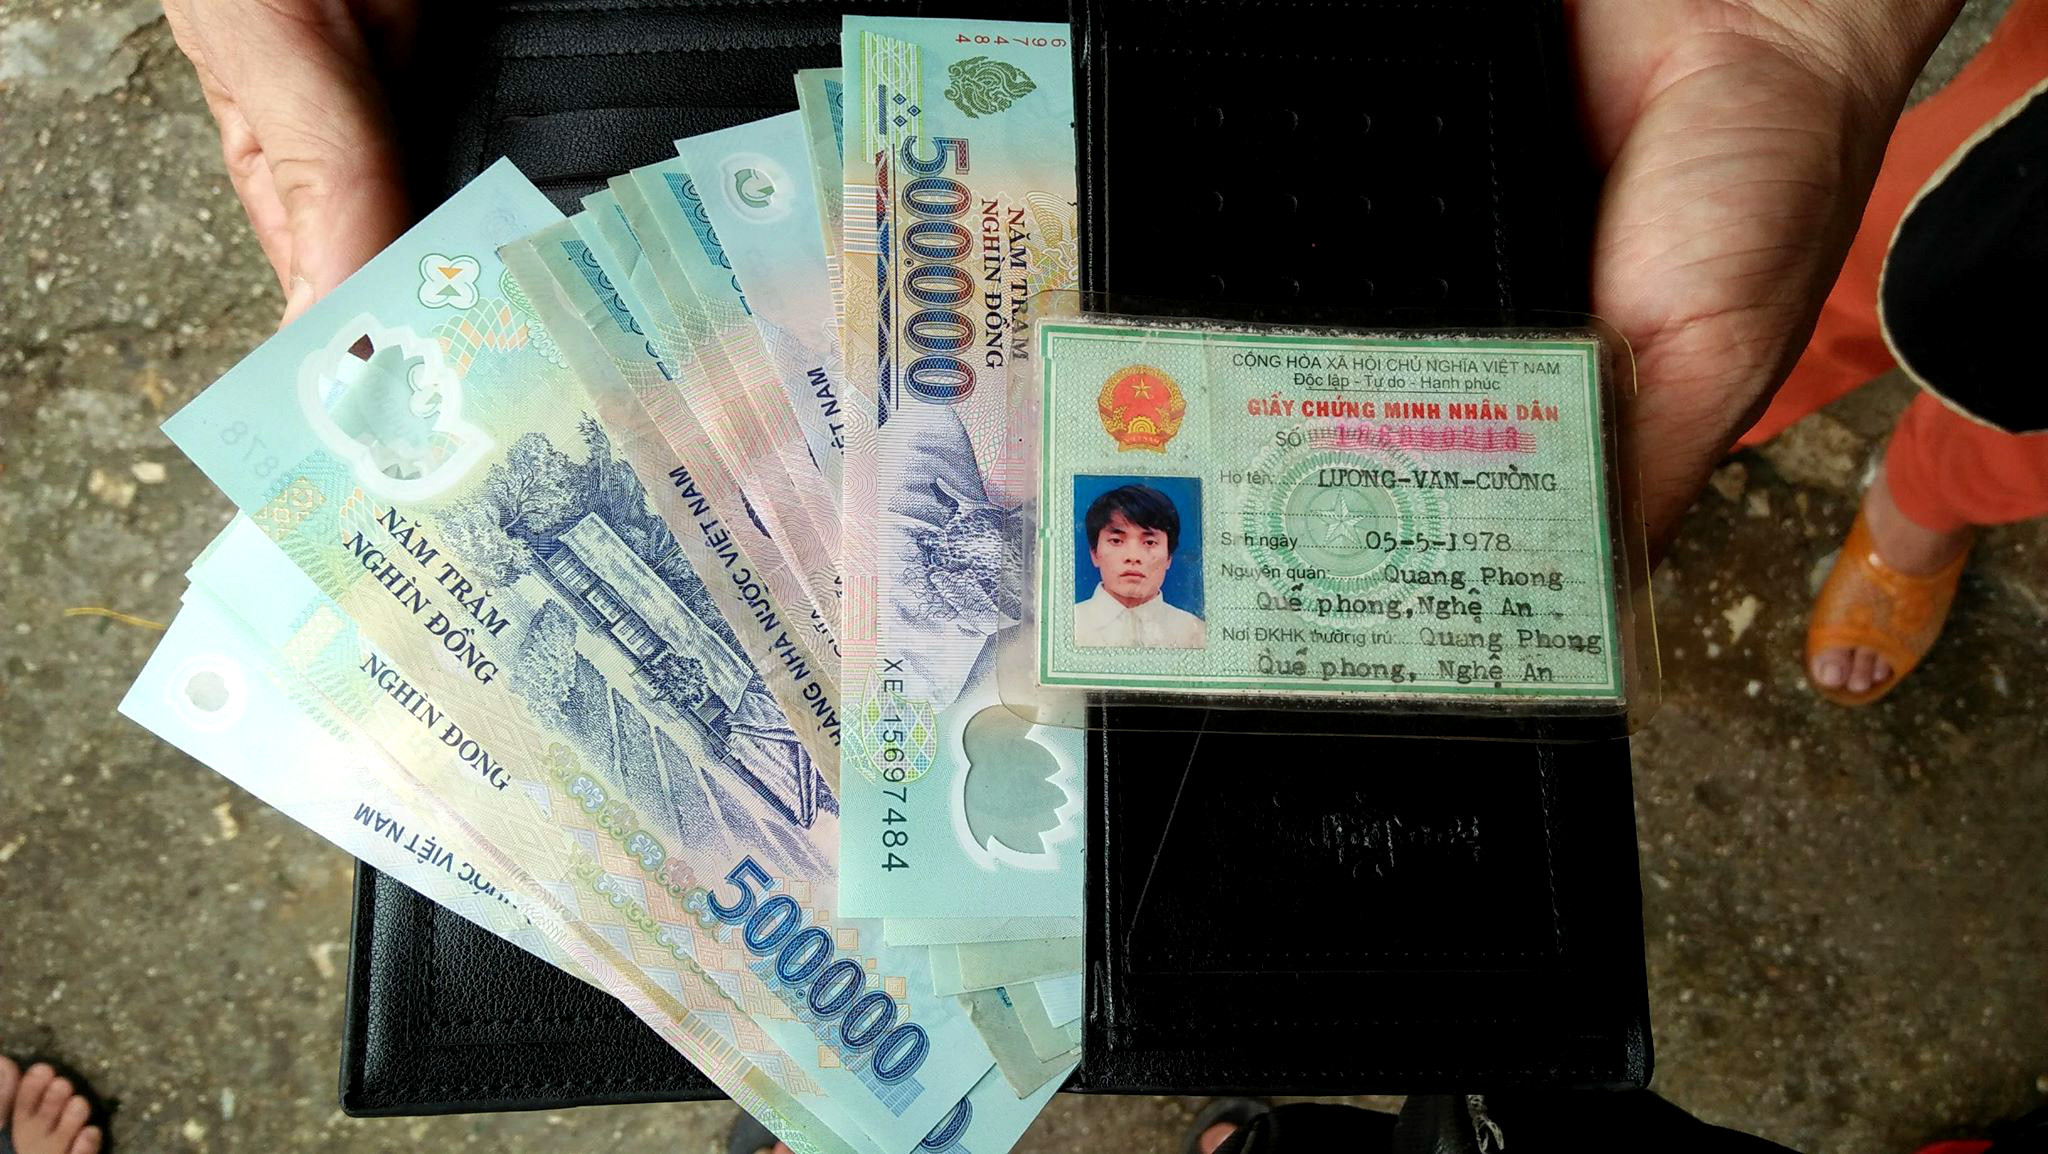 Chiếc ví màu đen, toàn bộ giấy tờ và hơn 12 triệu đồng của anh Lương Văn Cường bị rơi. Ảnh: Hùng Cường